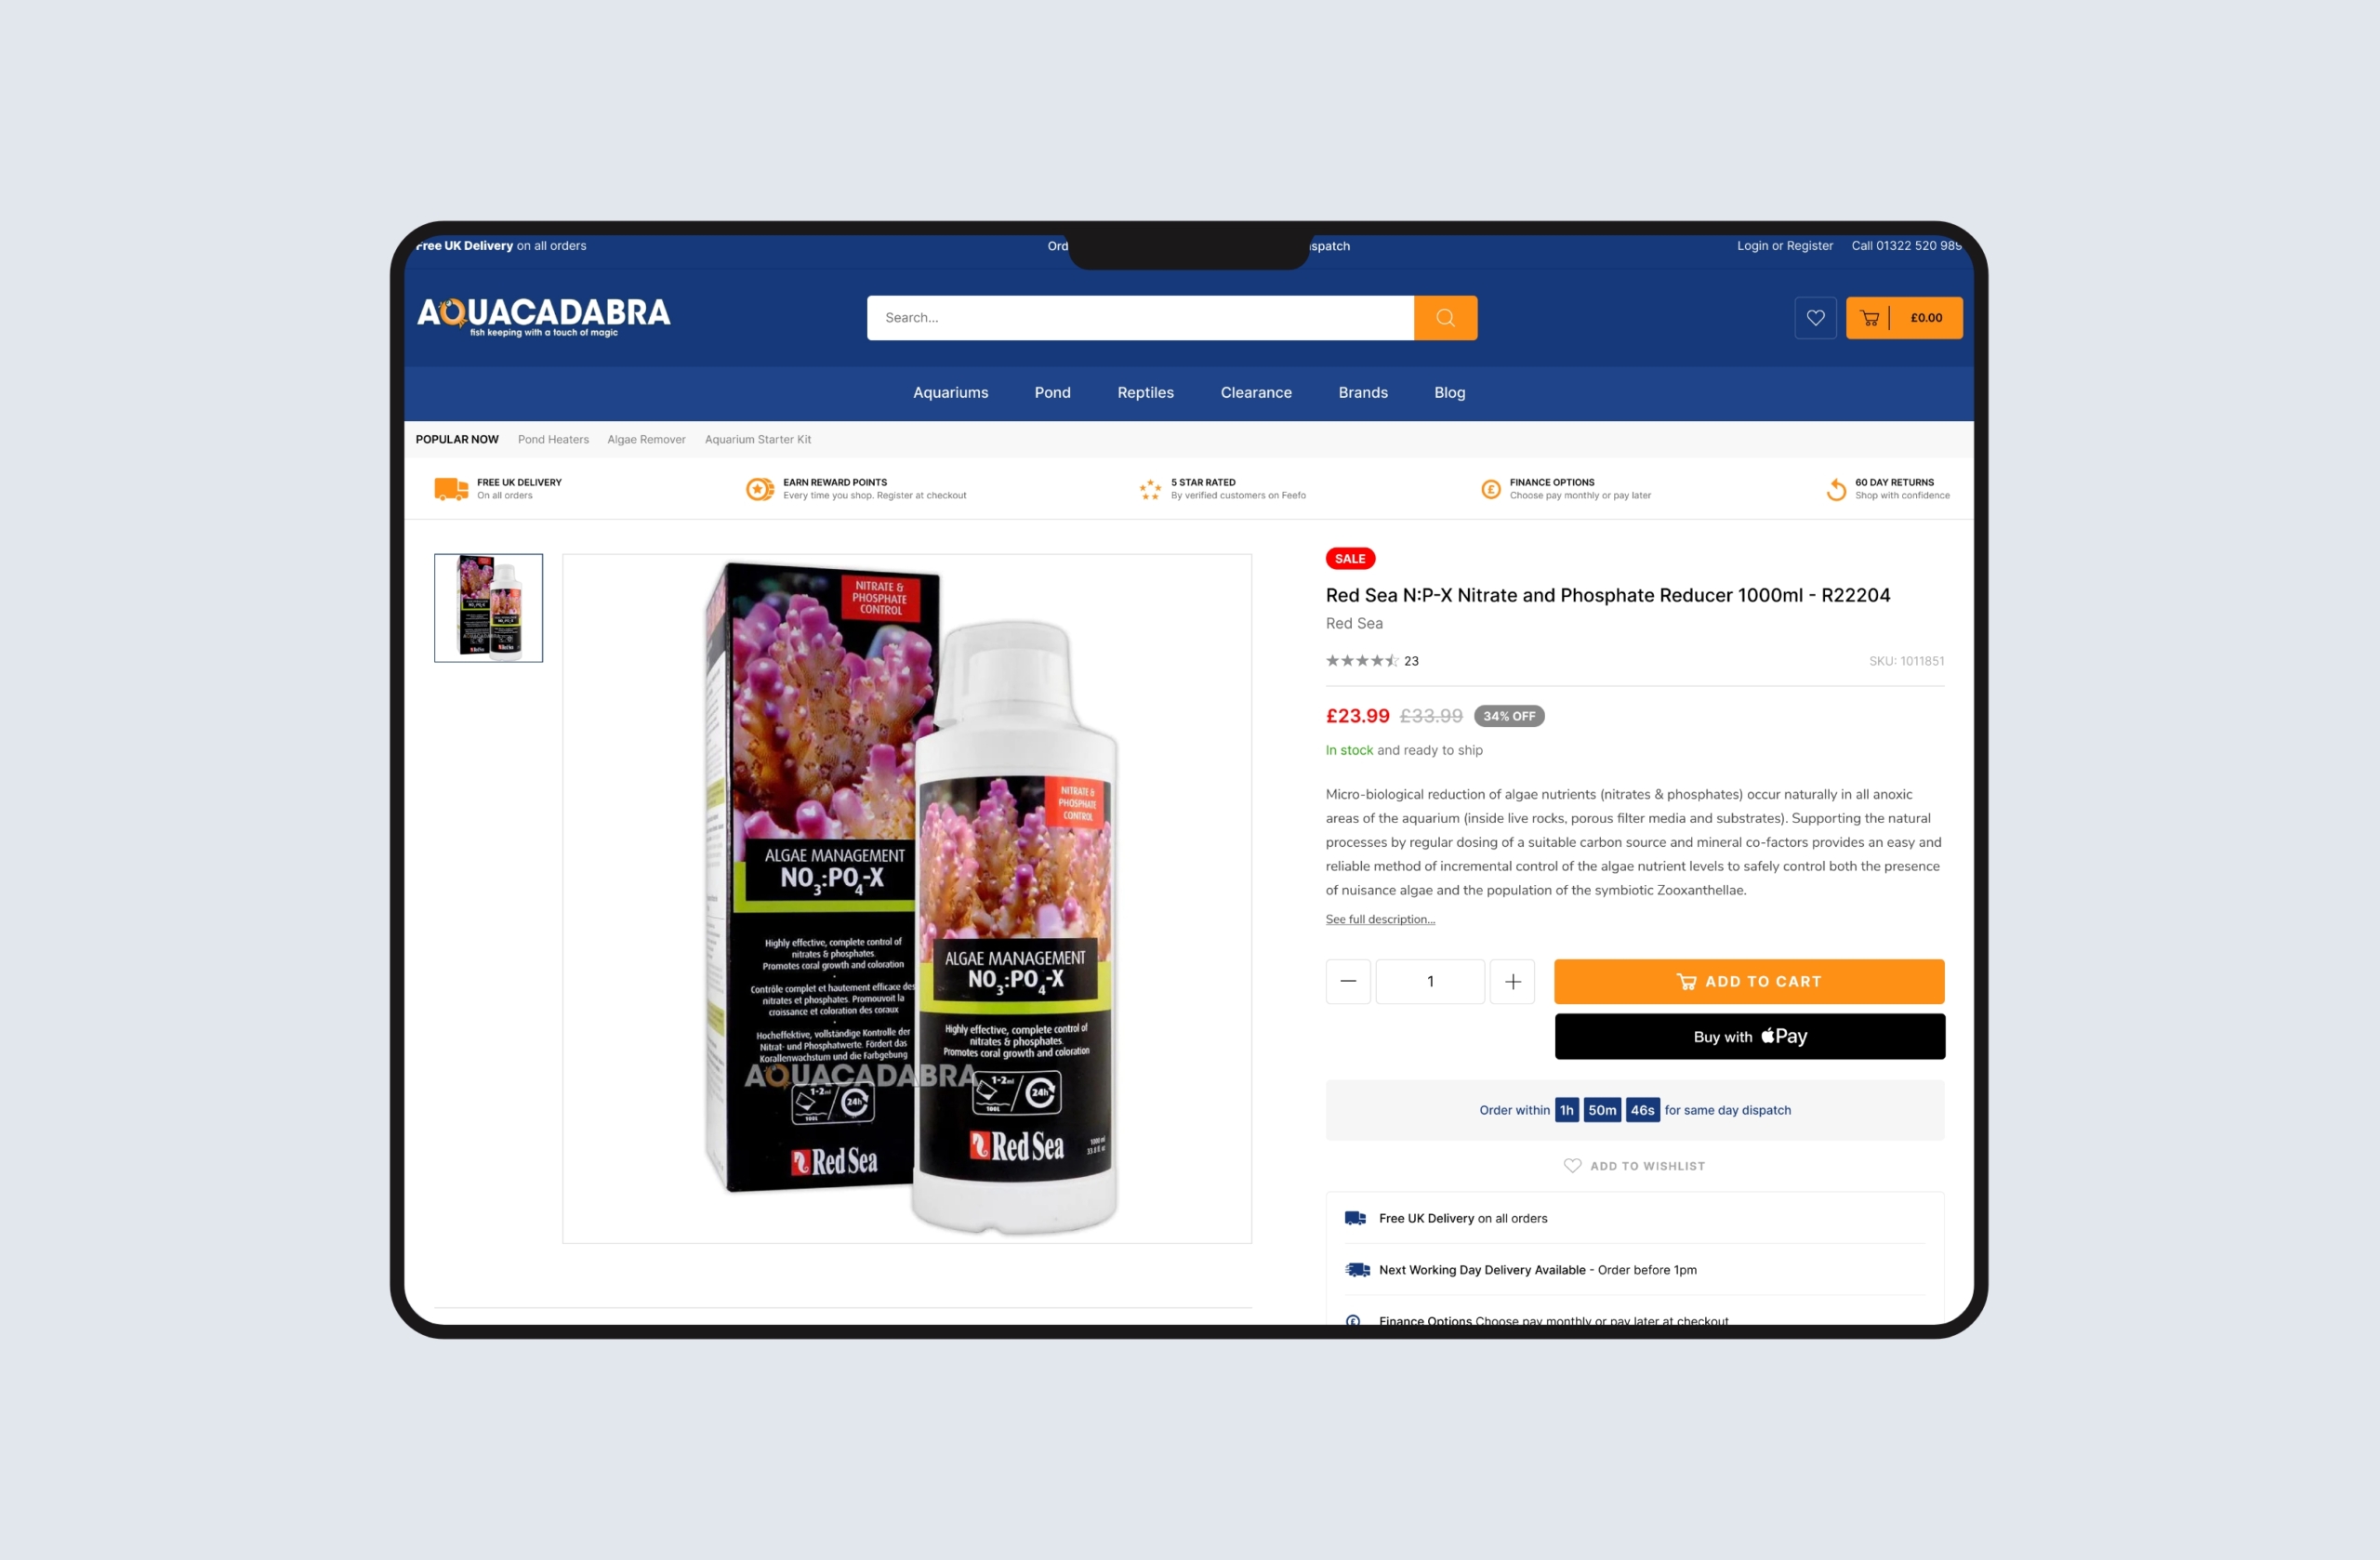 Aquacadabra website on desktop